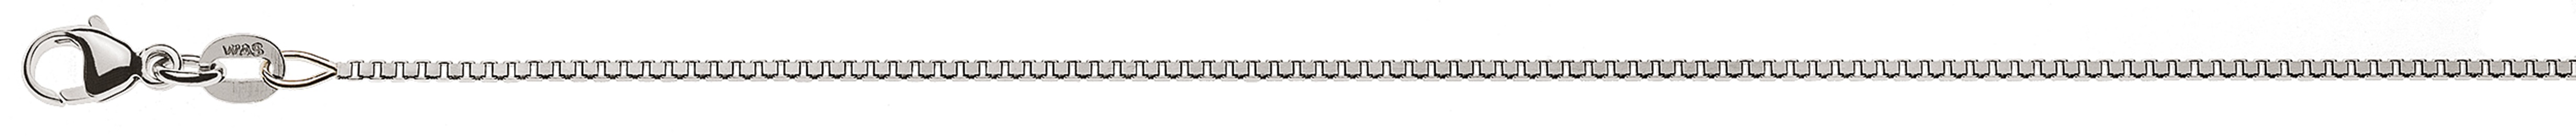 AURONOS Style Necklace white gold 9K Venetian chain diamond cut 45cm 1.1mm